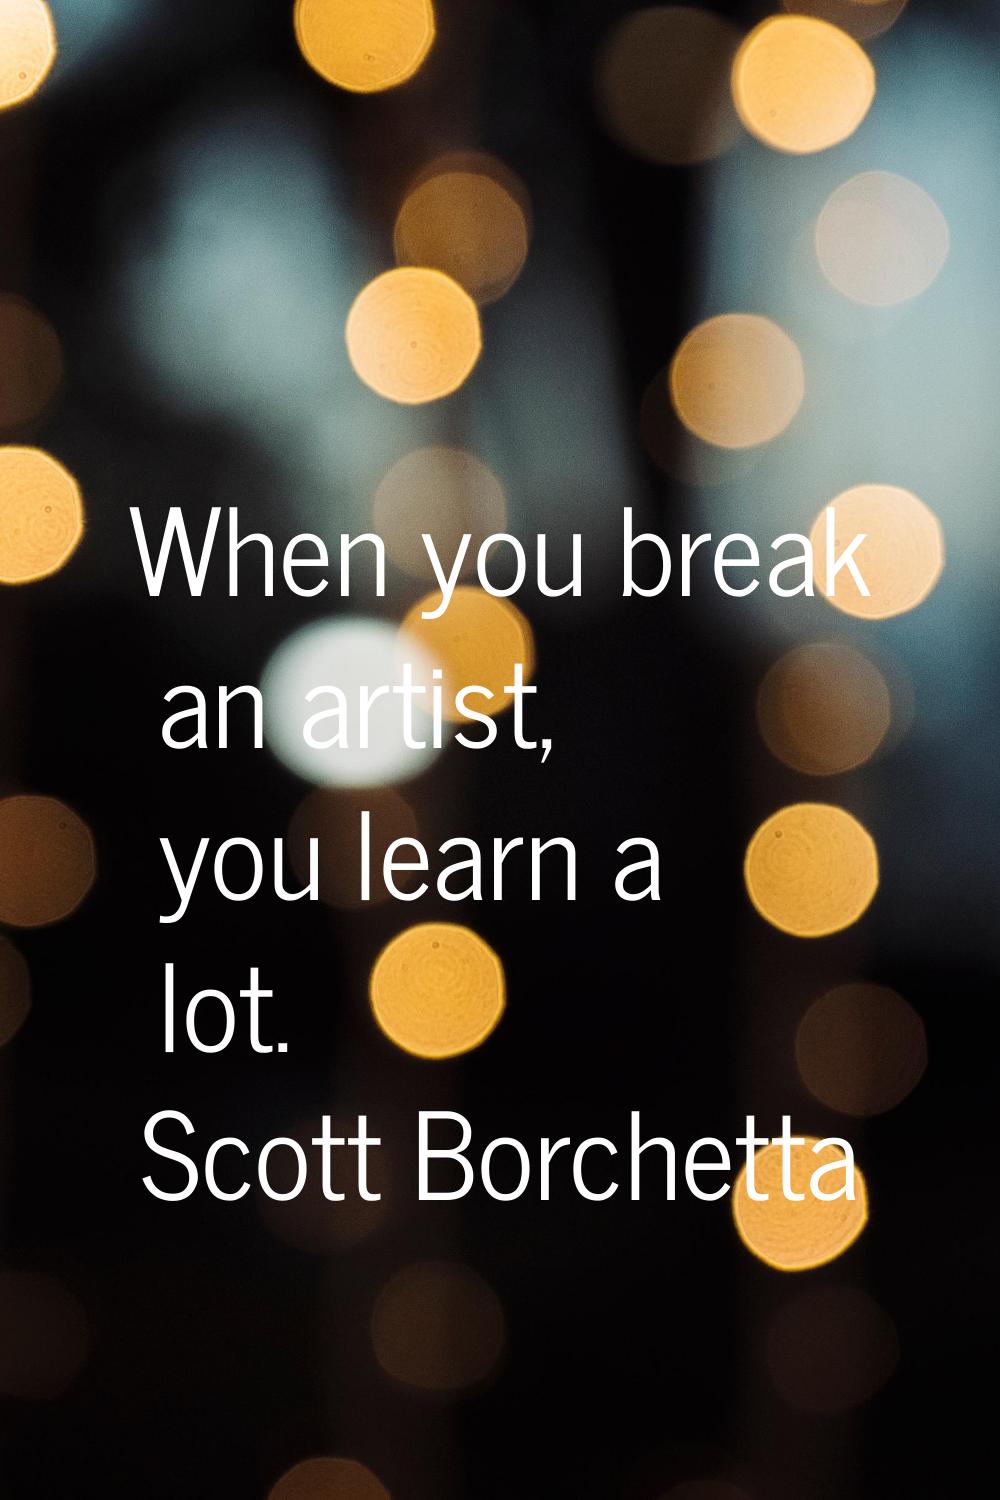 When you break an artist, you learn a lot.